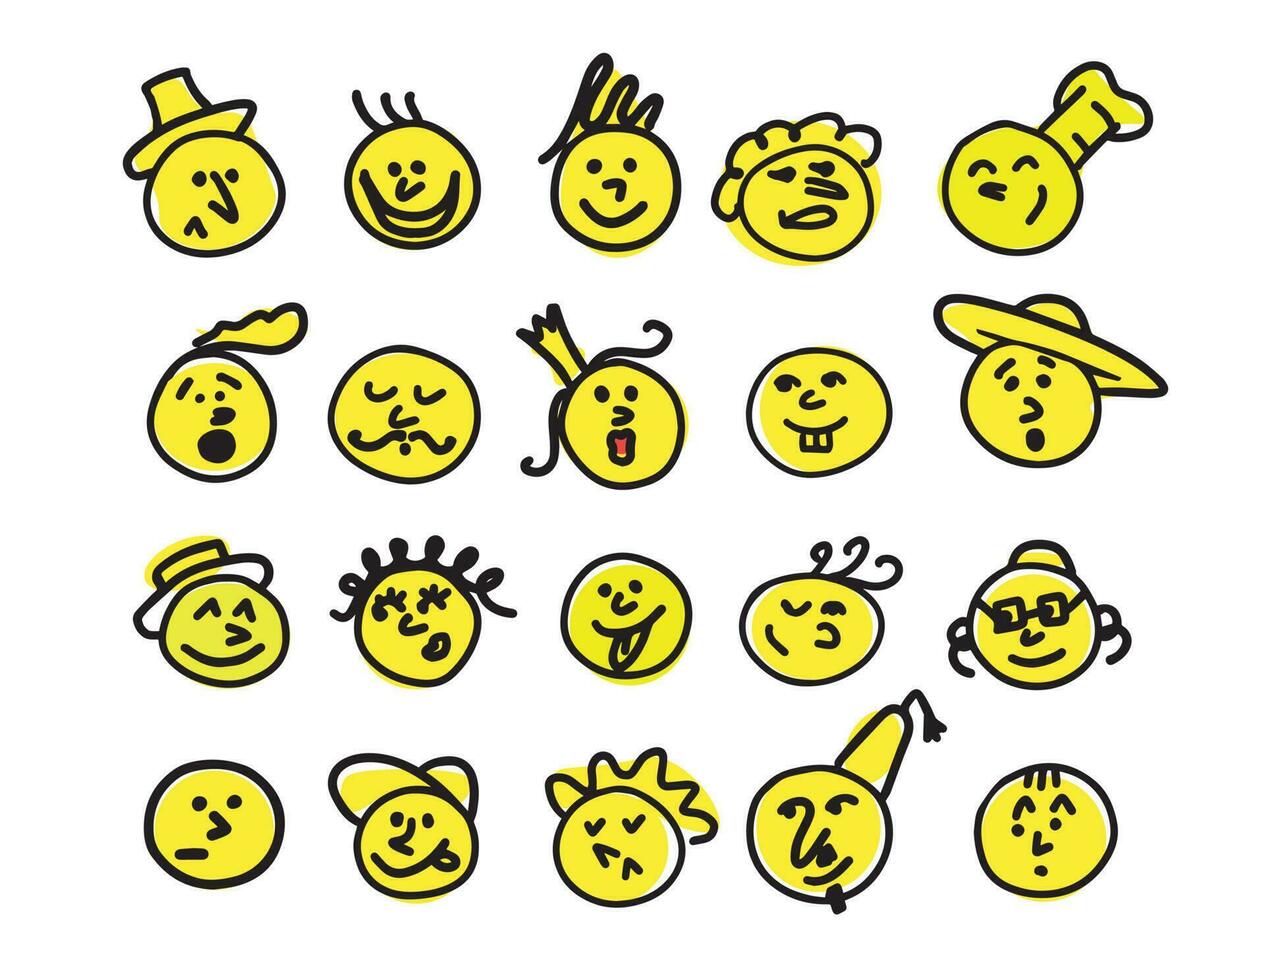 colección de emoji íconos dibujado en garabatear estilo.vector ilustración. vector